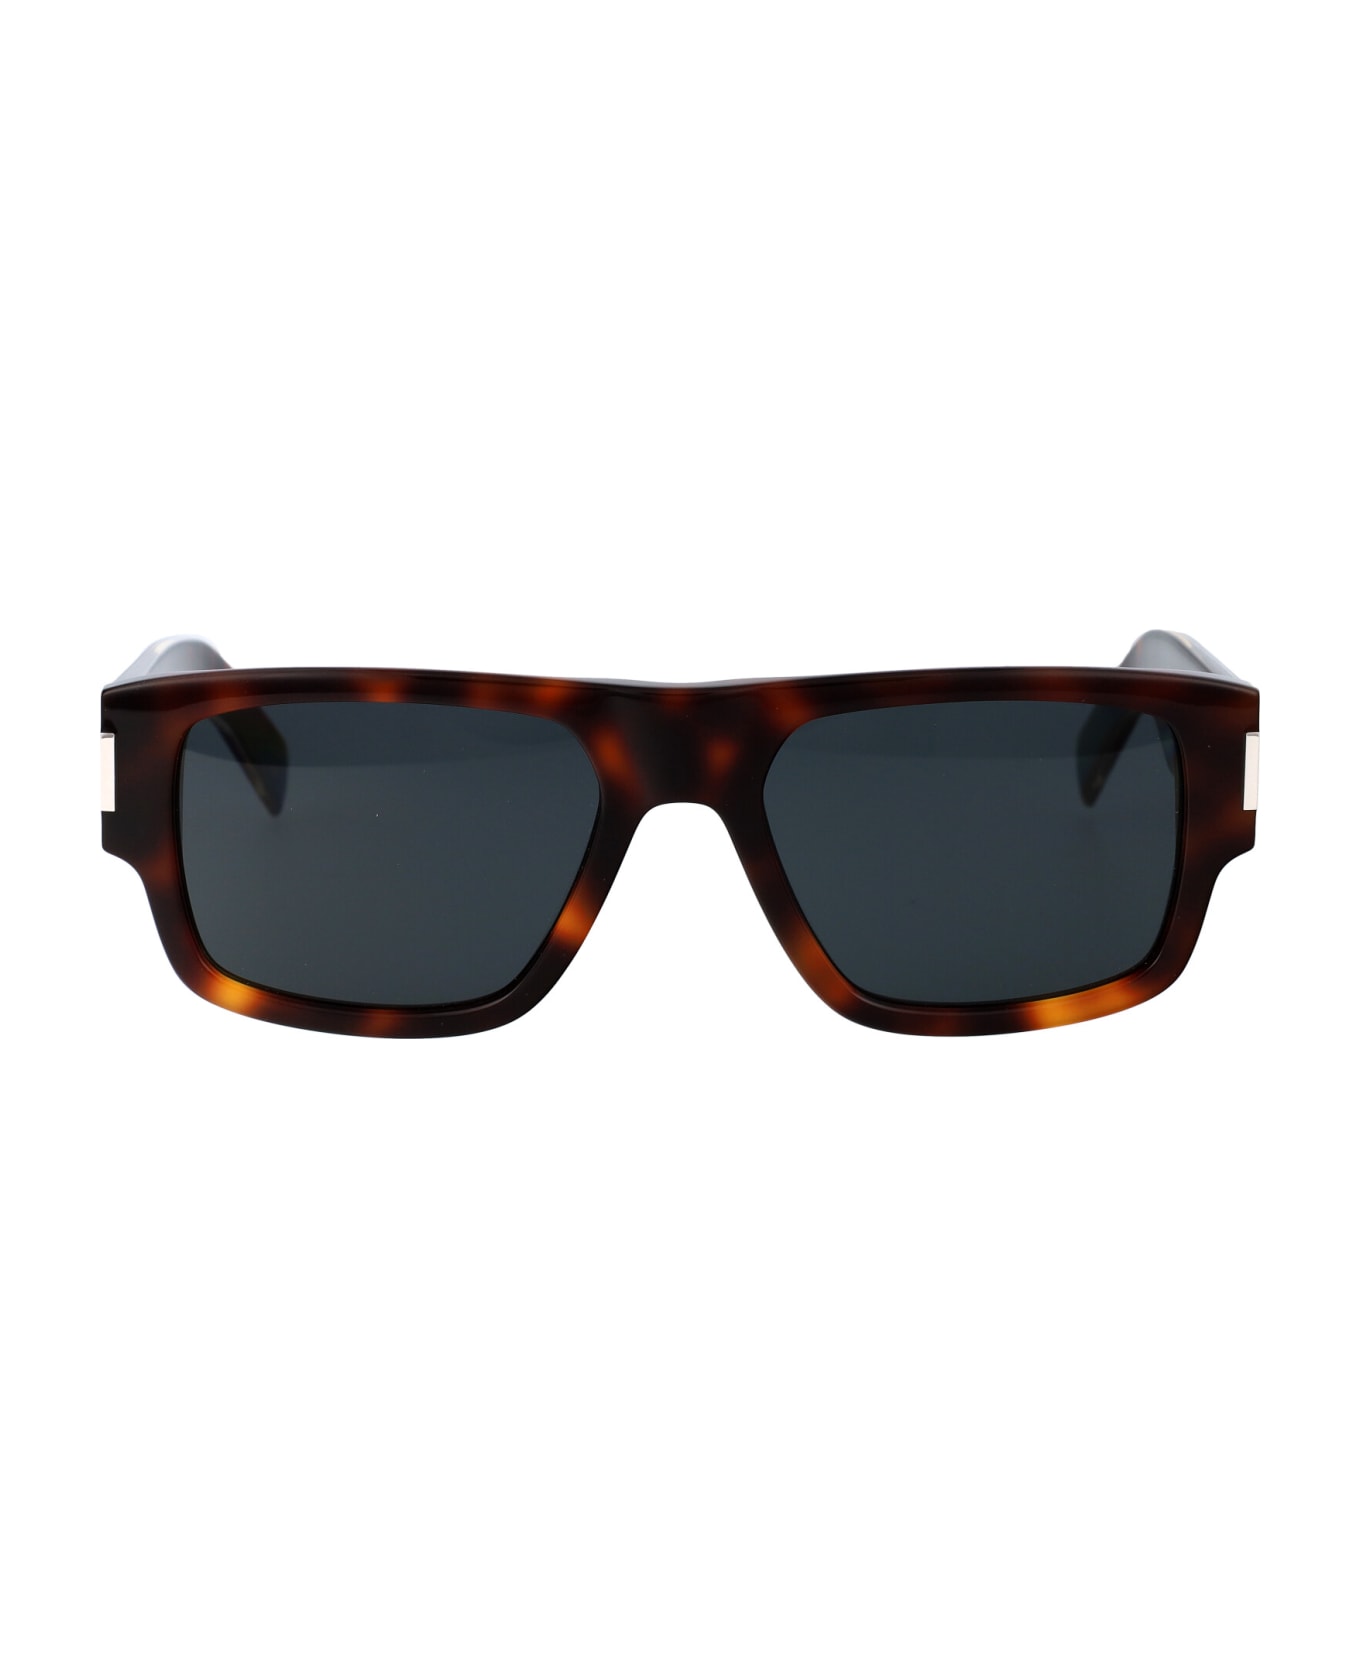 Saint Laurent Eyewear Sl 659 Sunglasses - 002 HAVANA CRYSTAL BLACK サングラス